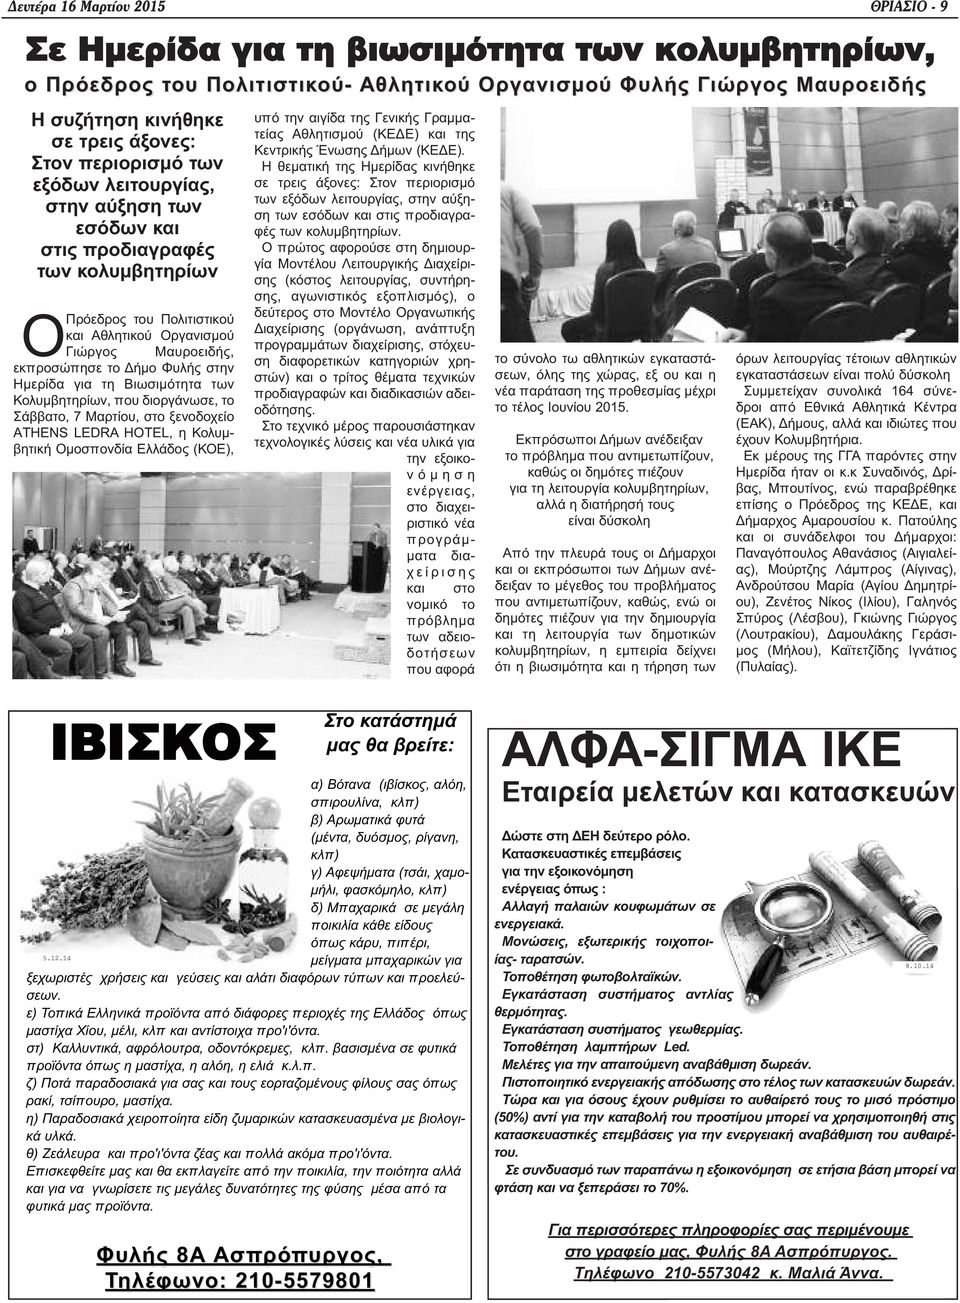 Φυλής στην Ημερίδα για τη Βιωσιμότητα των Κολυμβητηρίων, που διοργάνωσε, το Σάββατο, 7 Μαρτίου, στο ξενοδοχείο ΑTHENS LEDRA HOTEL, η Κολυμβητική Ομοσπονδία Ελλάδος (ΚΟΕ), υπό την αιγίδα της Γενικής